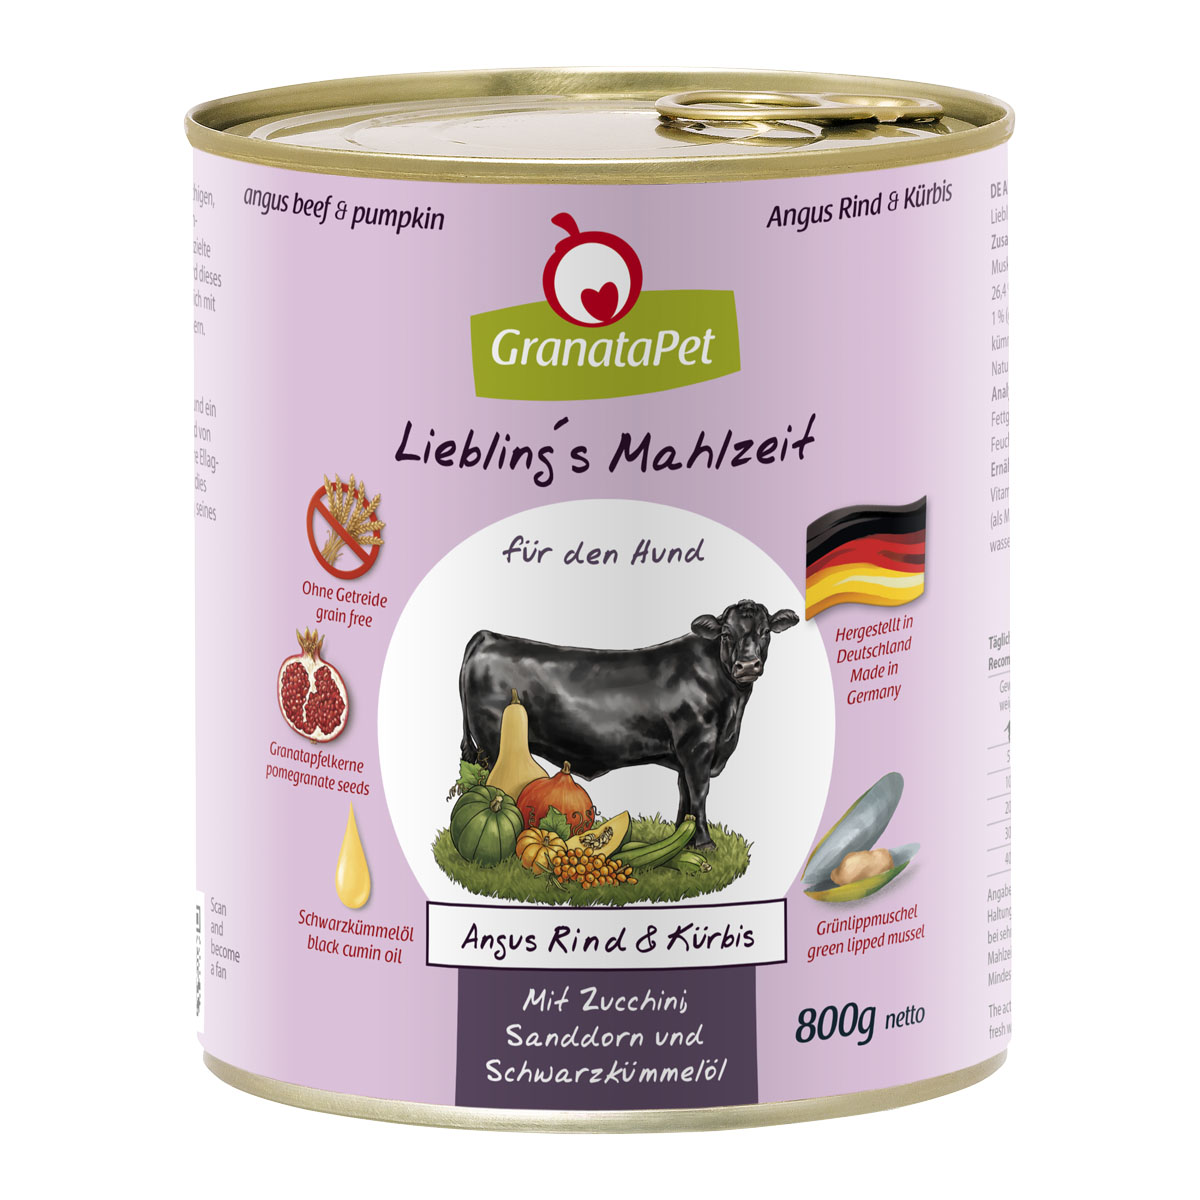 GranataPet Liebling's Mahlzeit hovězí z plemene Angus a dýně, cuketa, rakytník, olej z černého kmínu 6 × 800 g